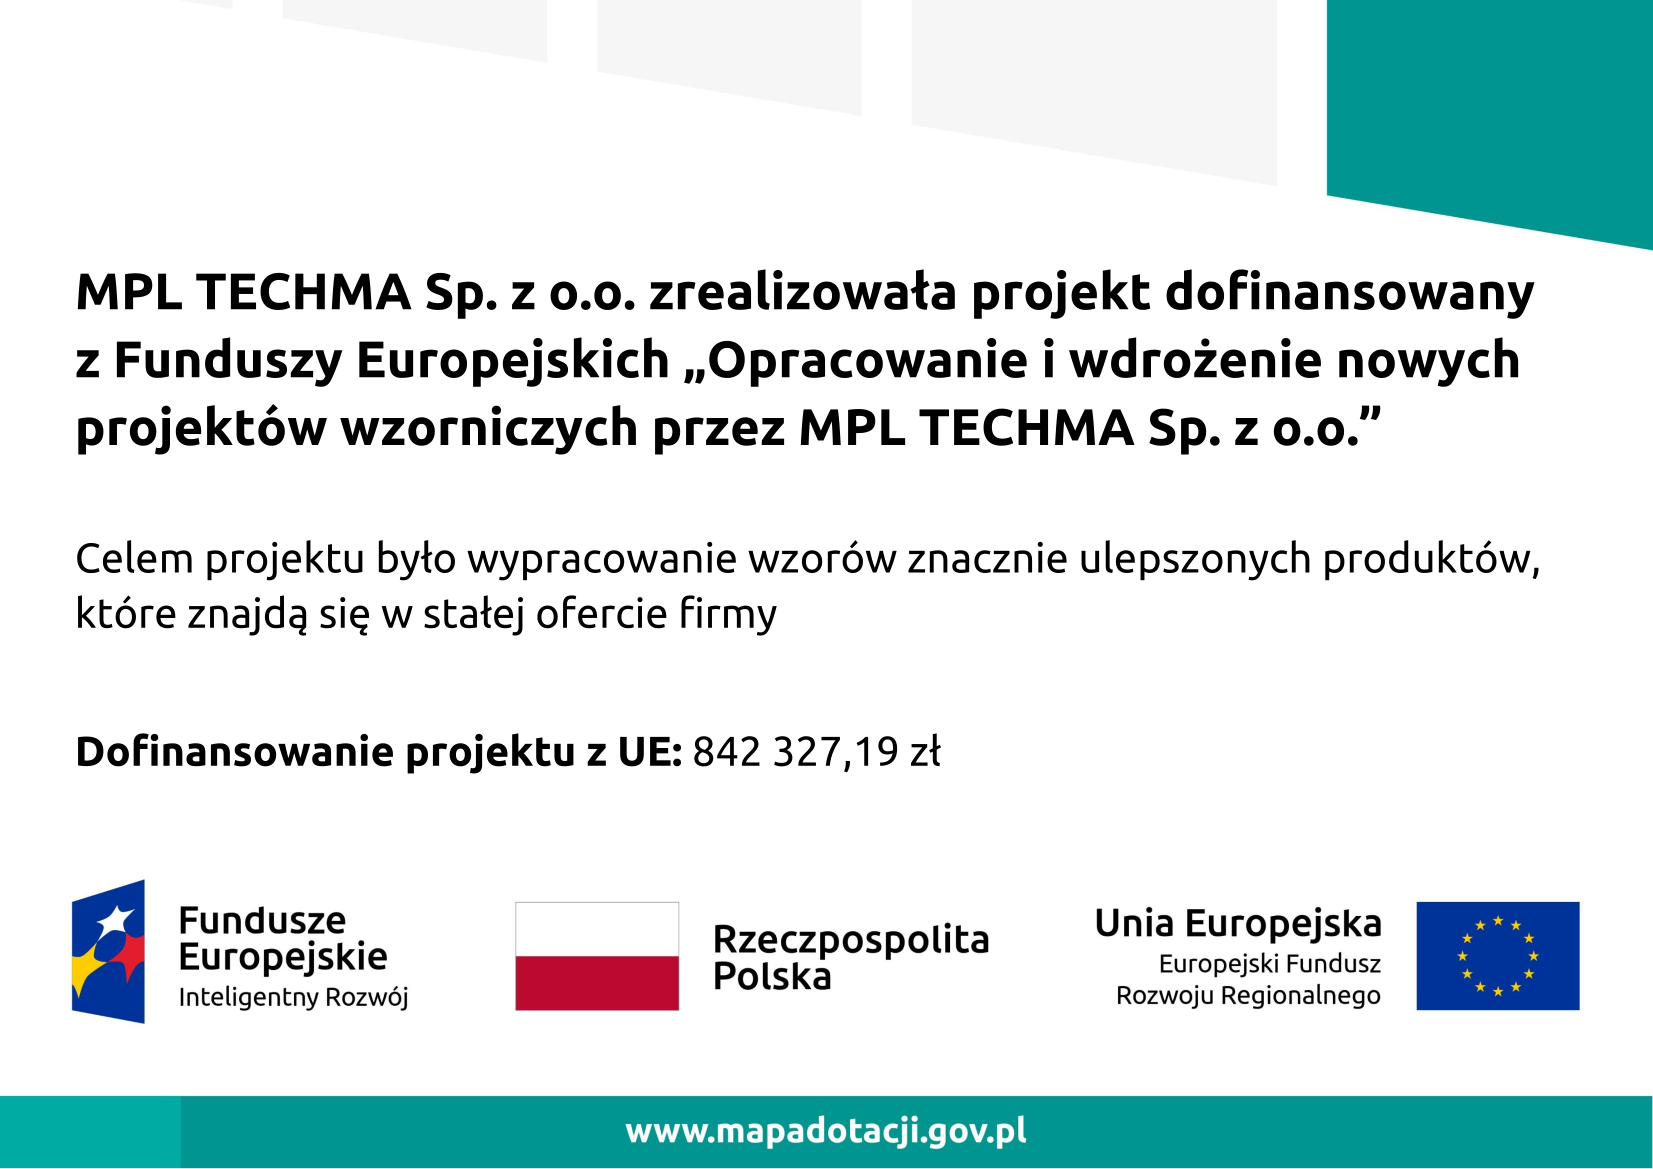 Plakat informacyjny zrealizowanego projektu unijnego, poddziałanie 2.3.5